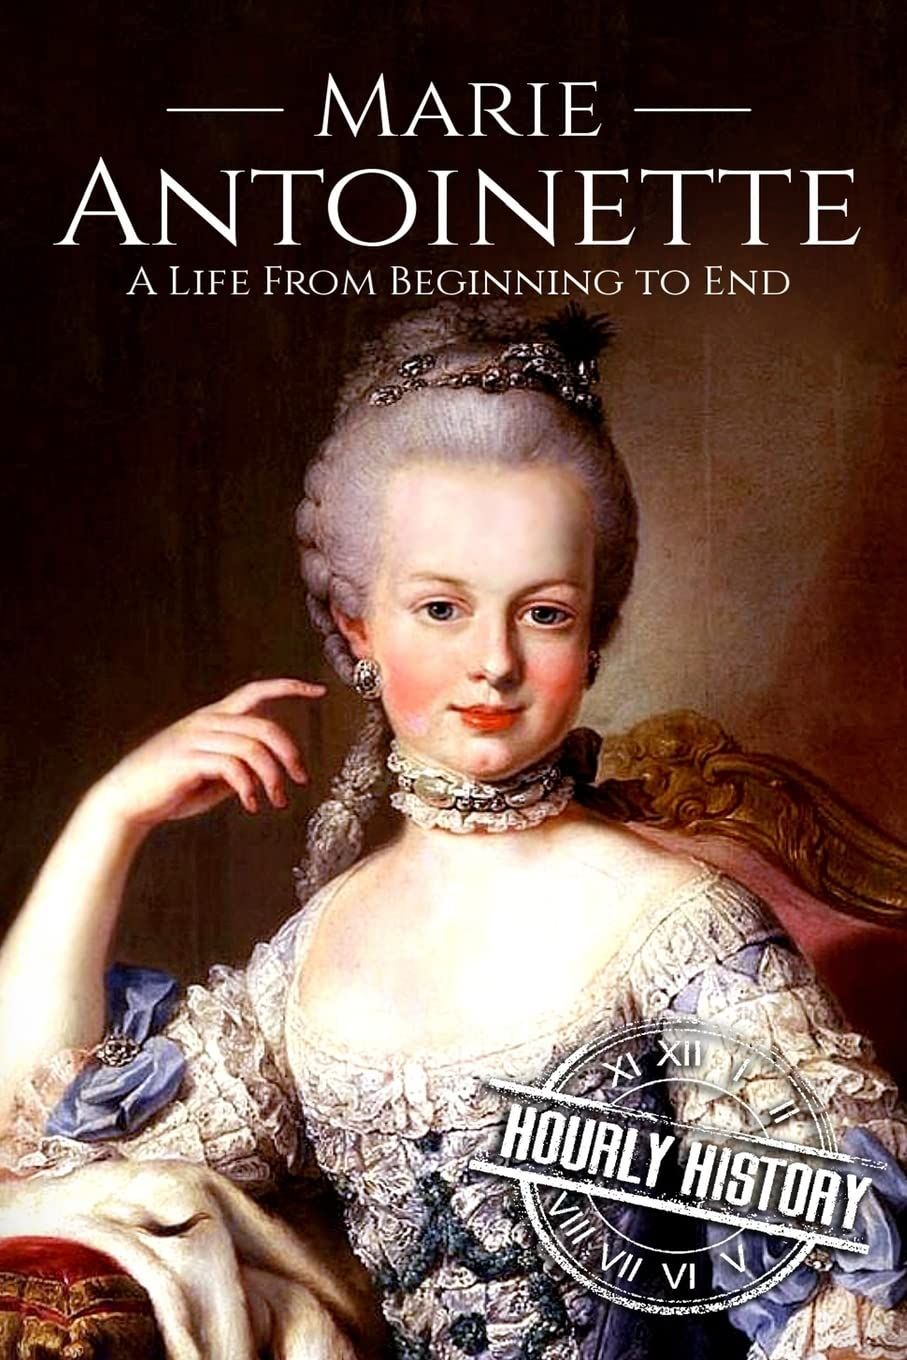 What Happened to Marie Antoinette's Children – French Revolution